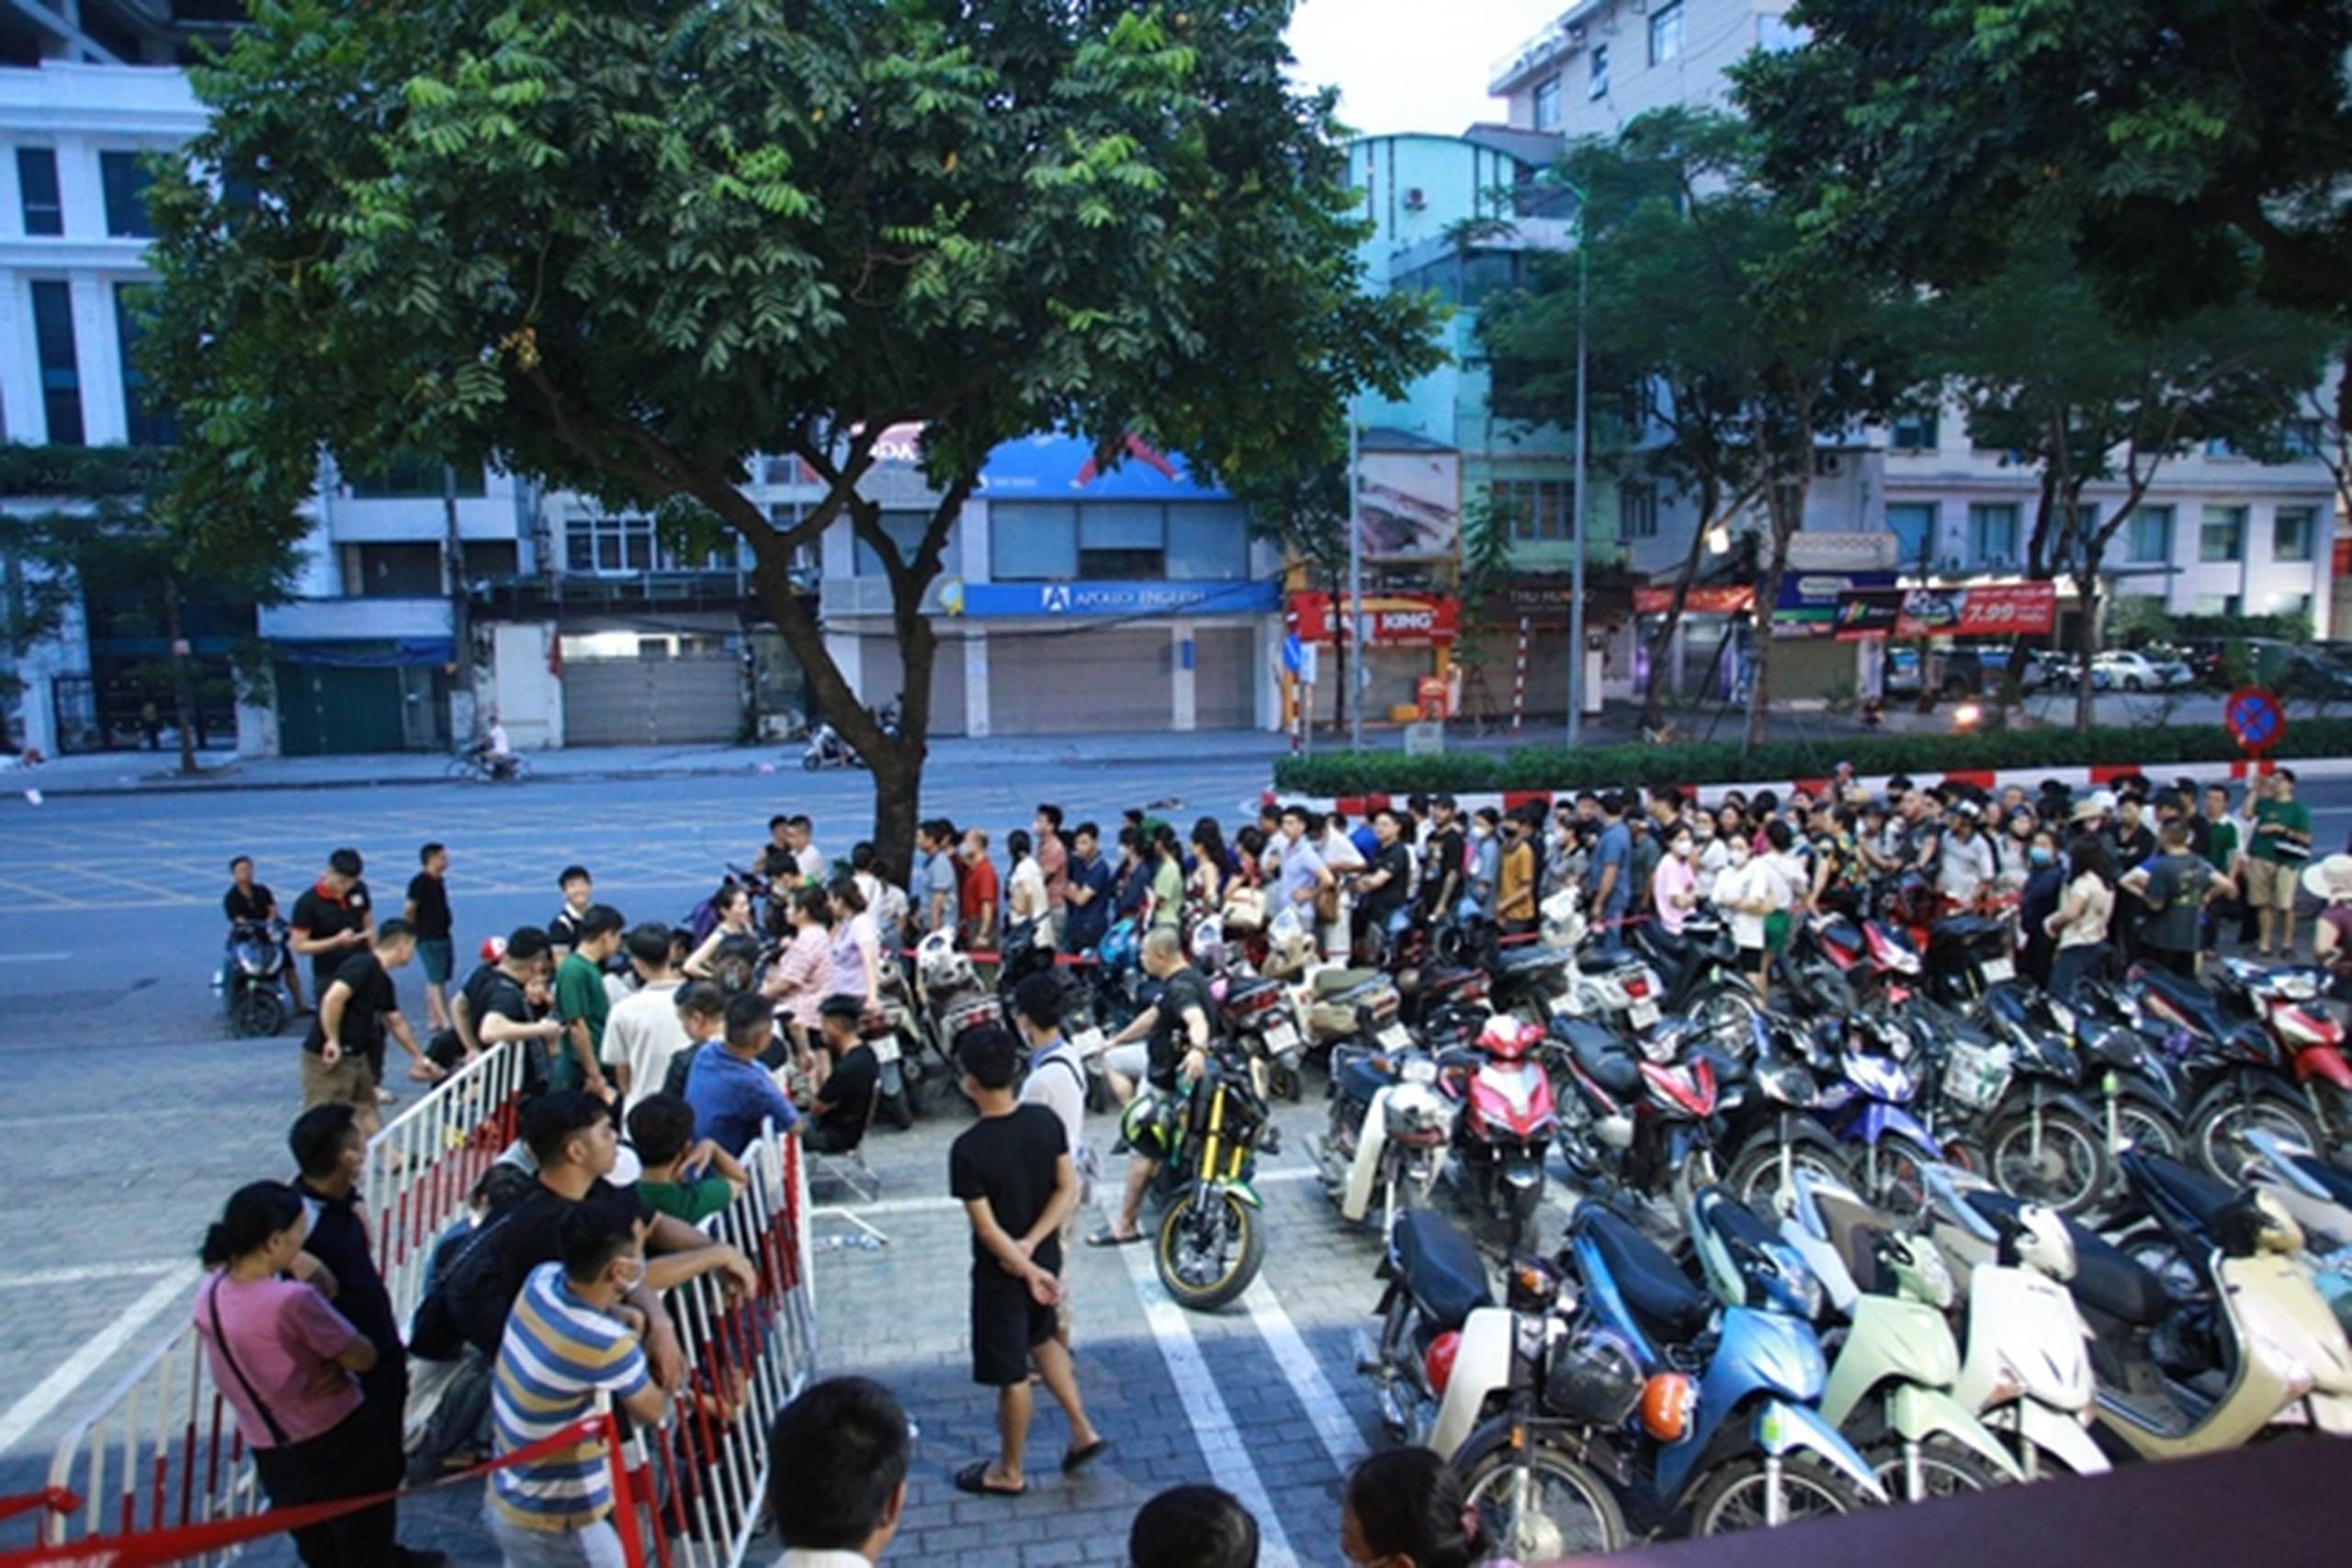 Hà Nội: Người dân từ các tỉnh hụt hẫng quay về quê khi xếp hàng cả đêm nhưng không mua được vàng-1